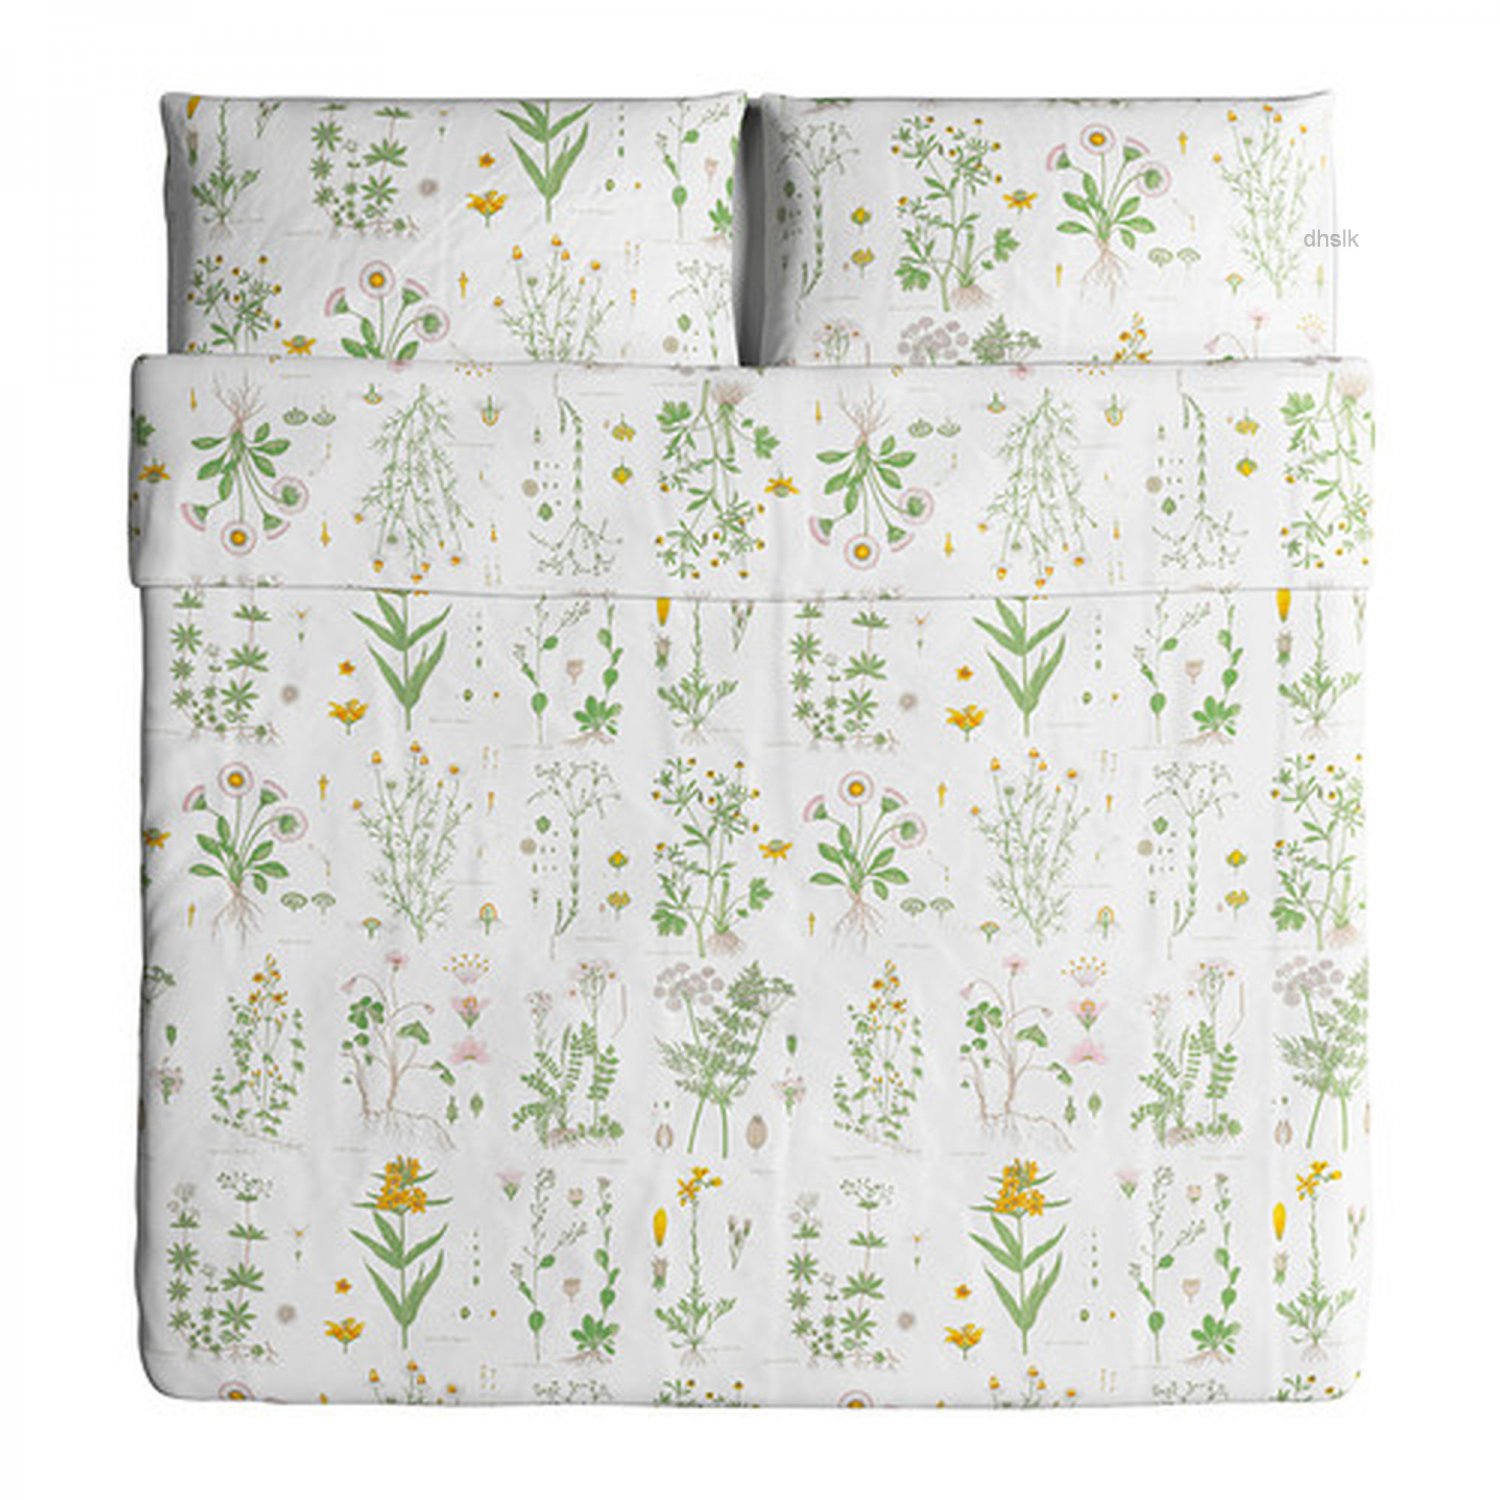 Ikea Strandkrypa King Duvet Cover Pillowcases Set Botanical Green